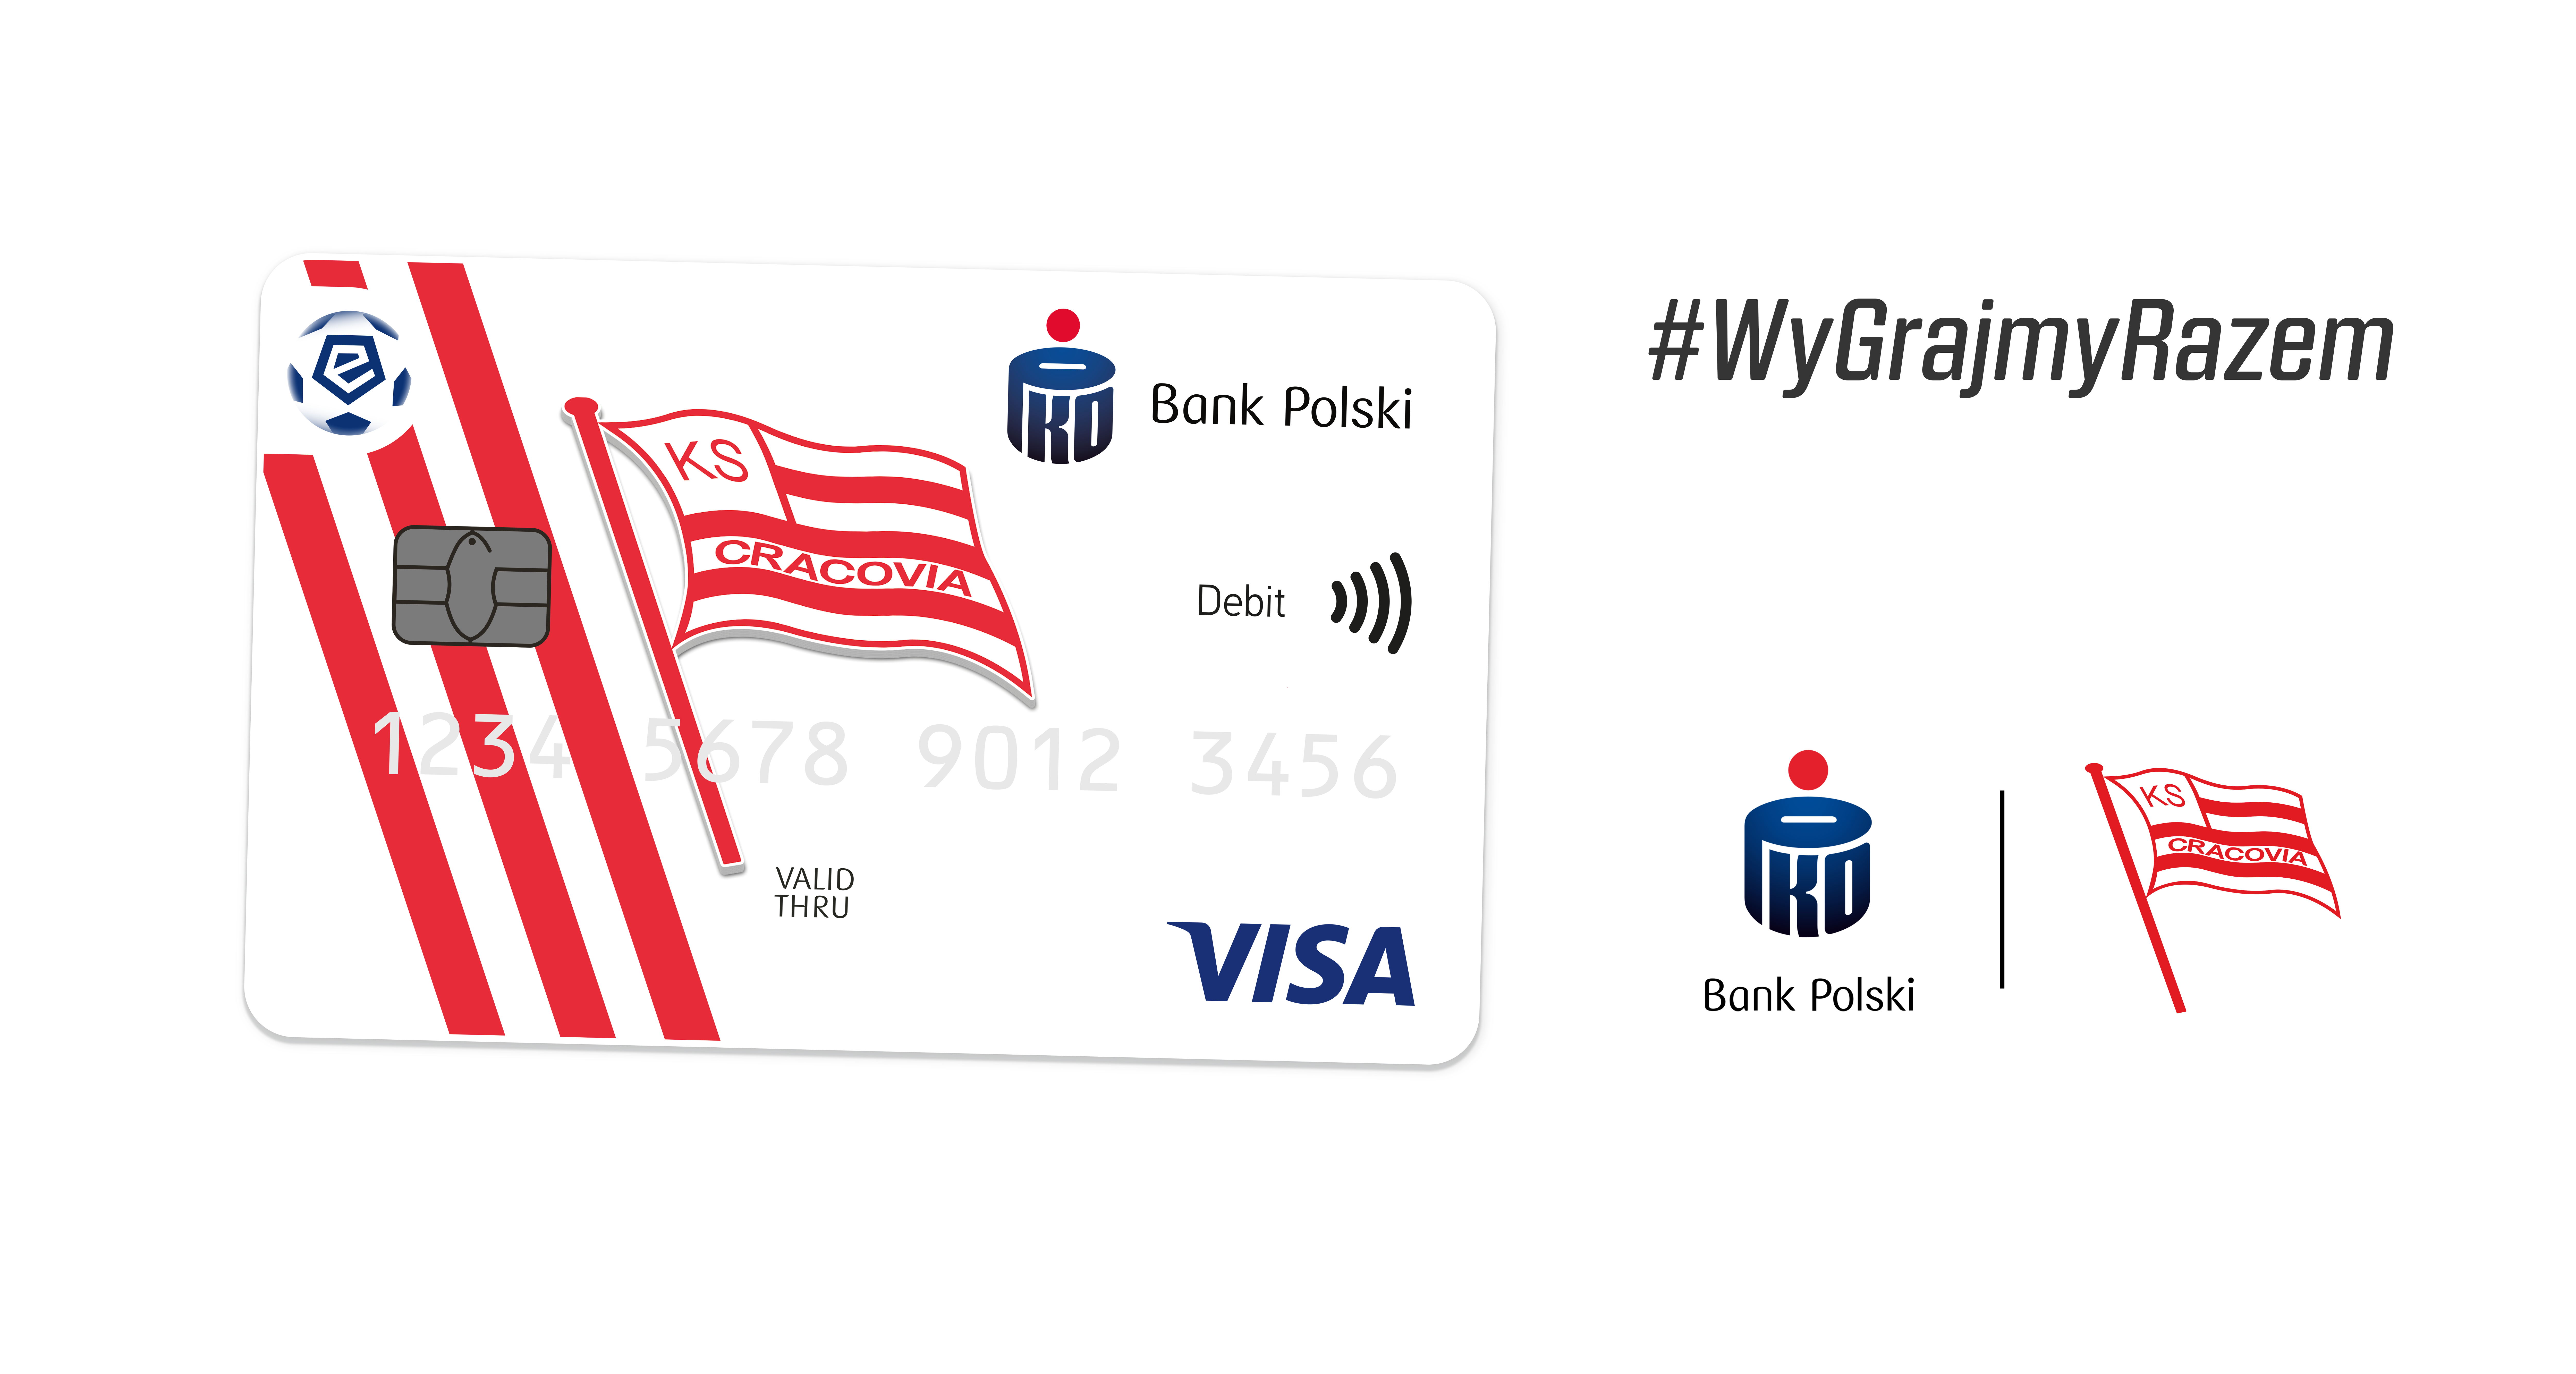 #WyGrajmyRazem - Projekt partnerski Cracovii oraz PKO Banku Polskiego